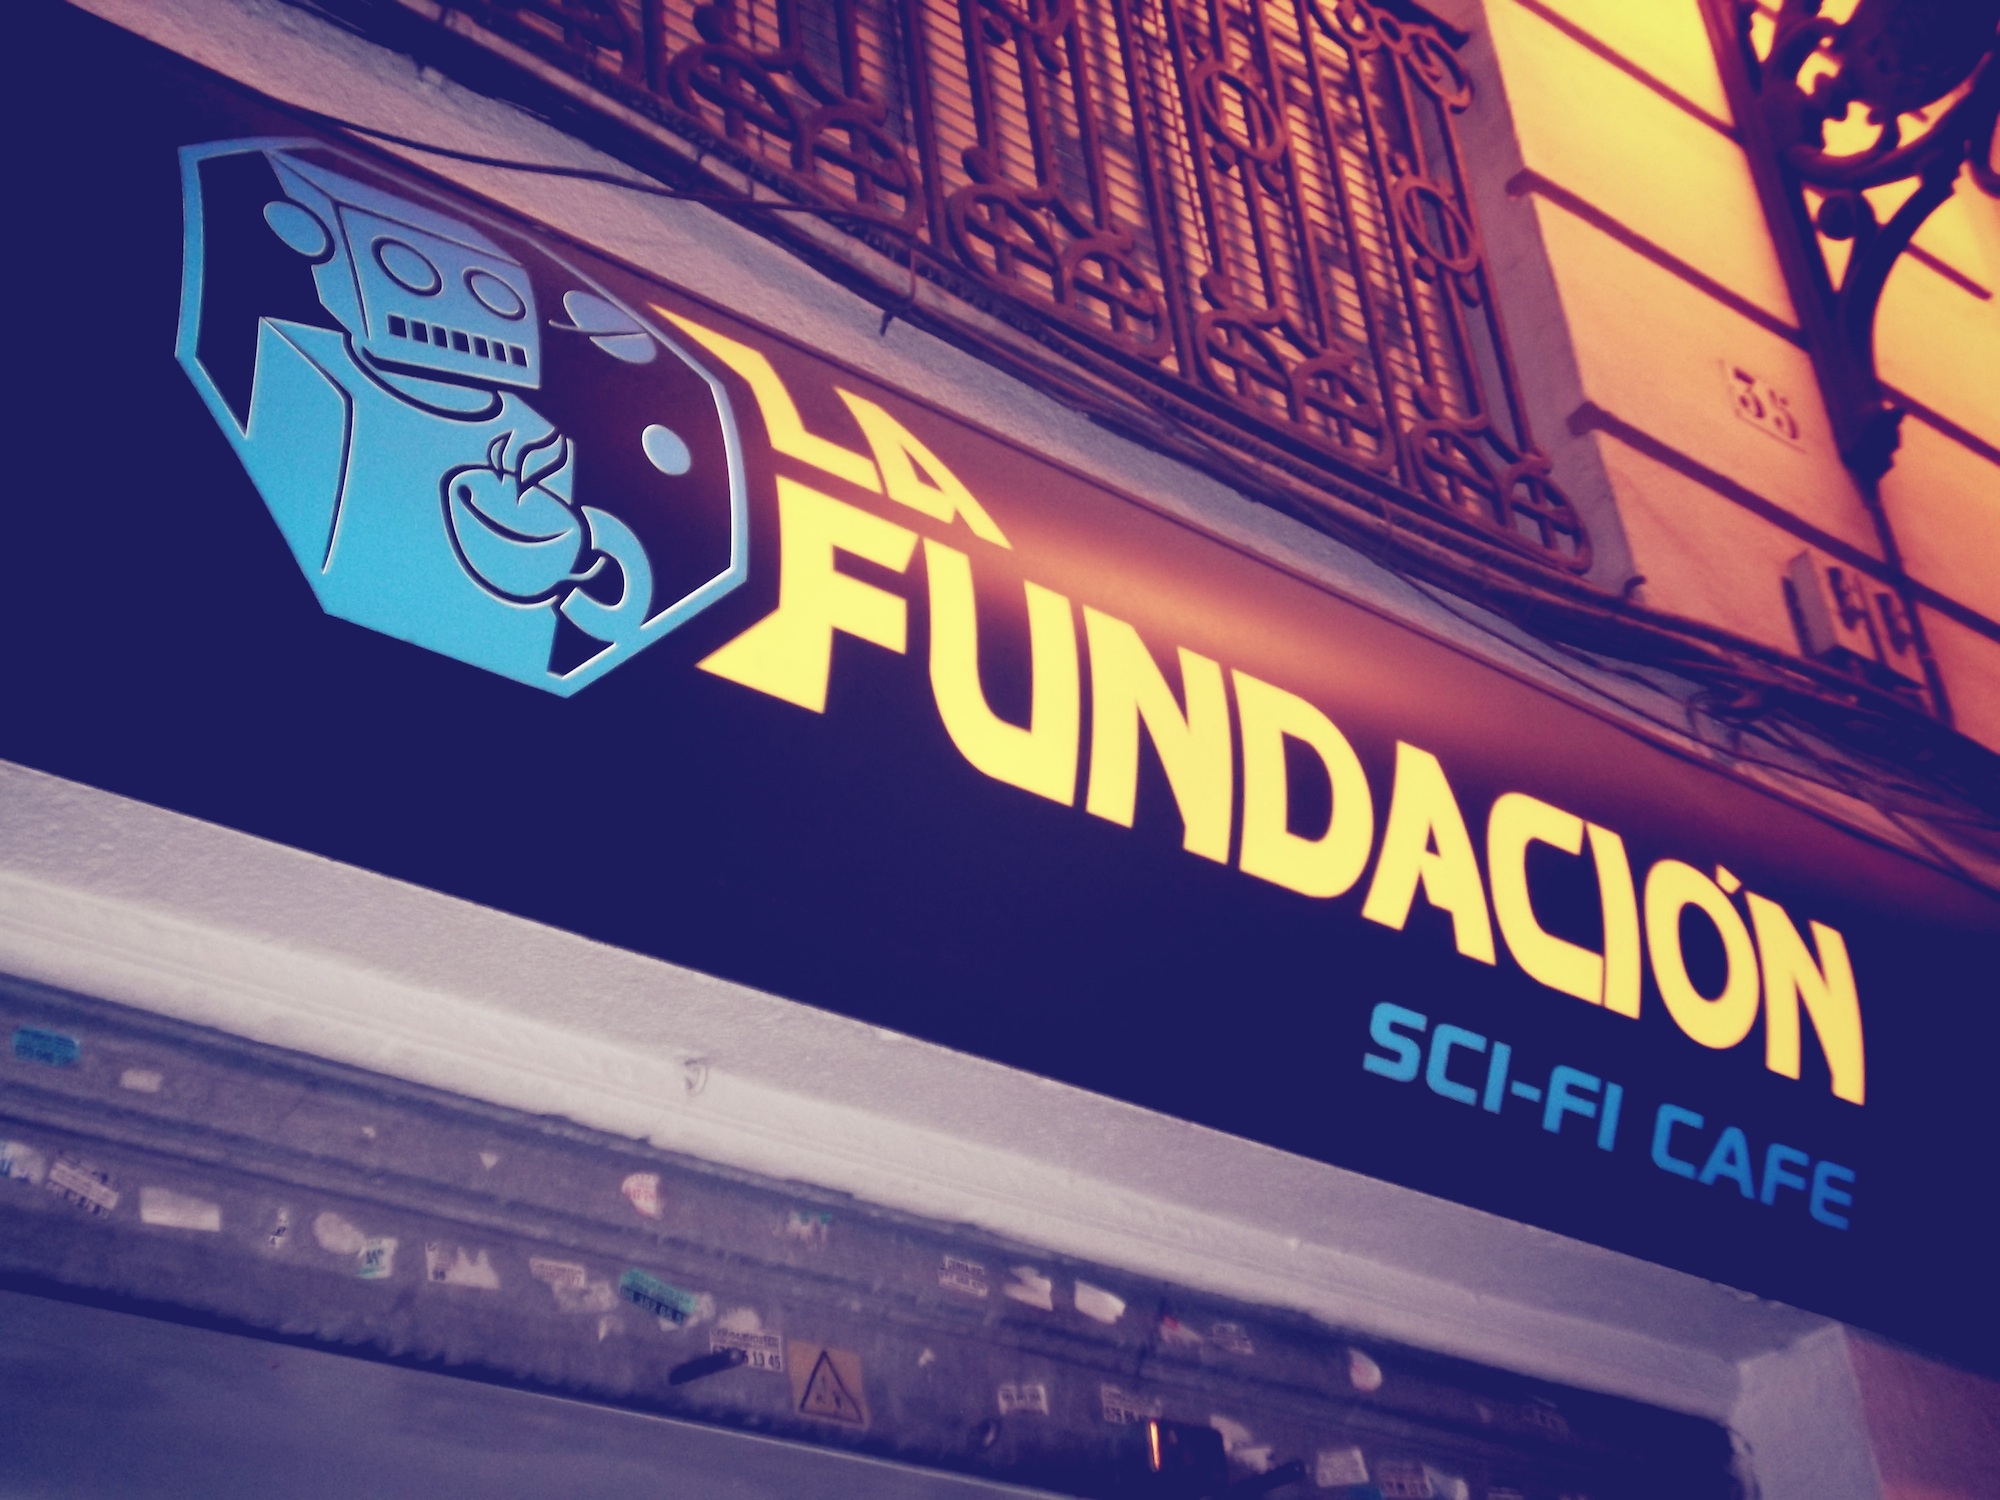 La Fundación, sci-fi café